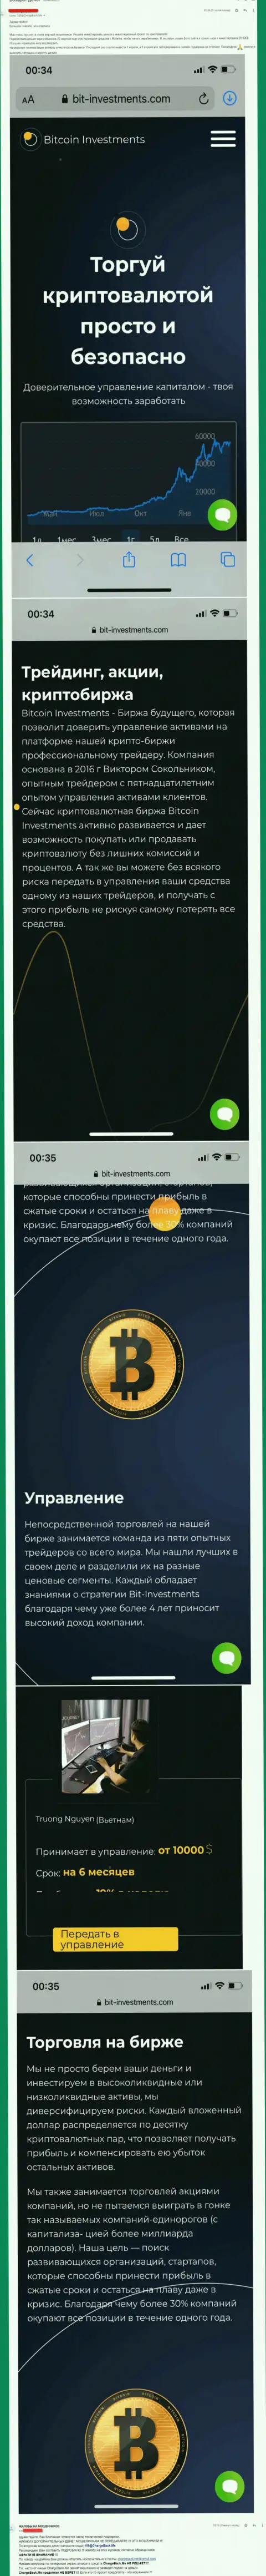 Бегите от организации Bitcoin Investments как можно дальше, заберут депозиты !!! (отзыв)